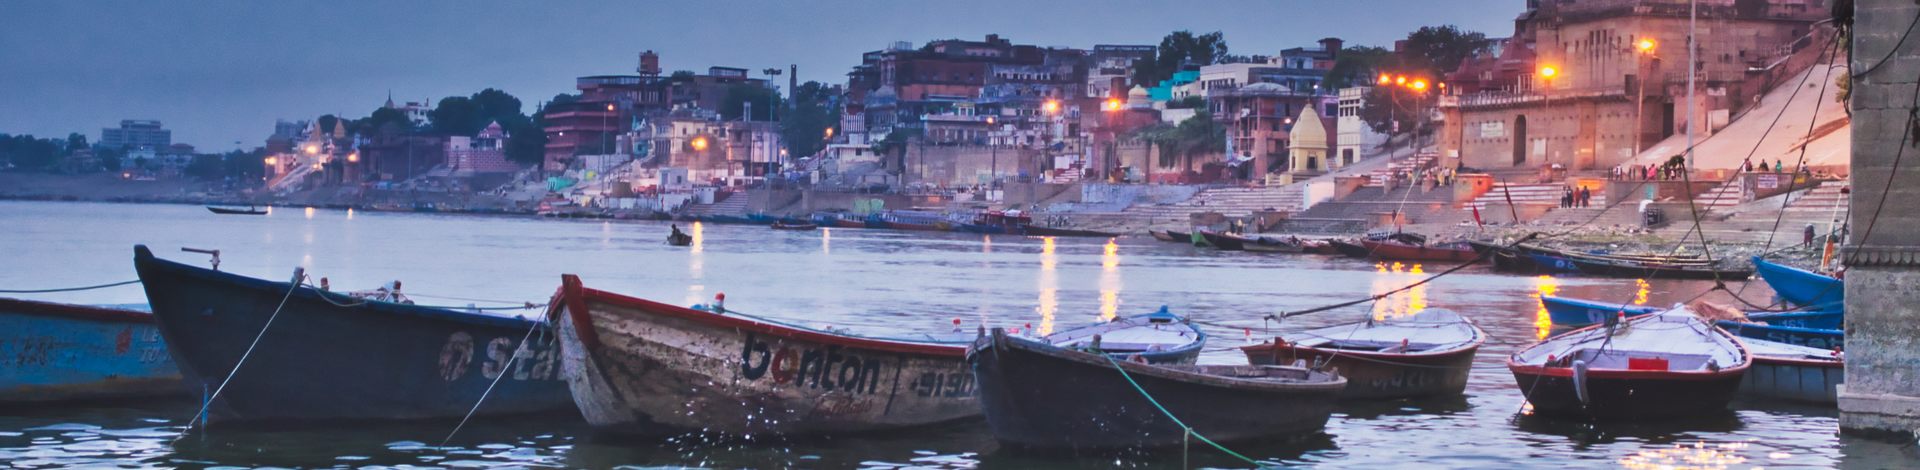 Gange Benares ghats Varanasi - Asie Online